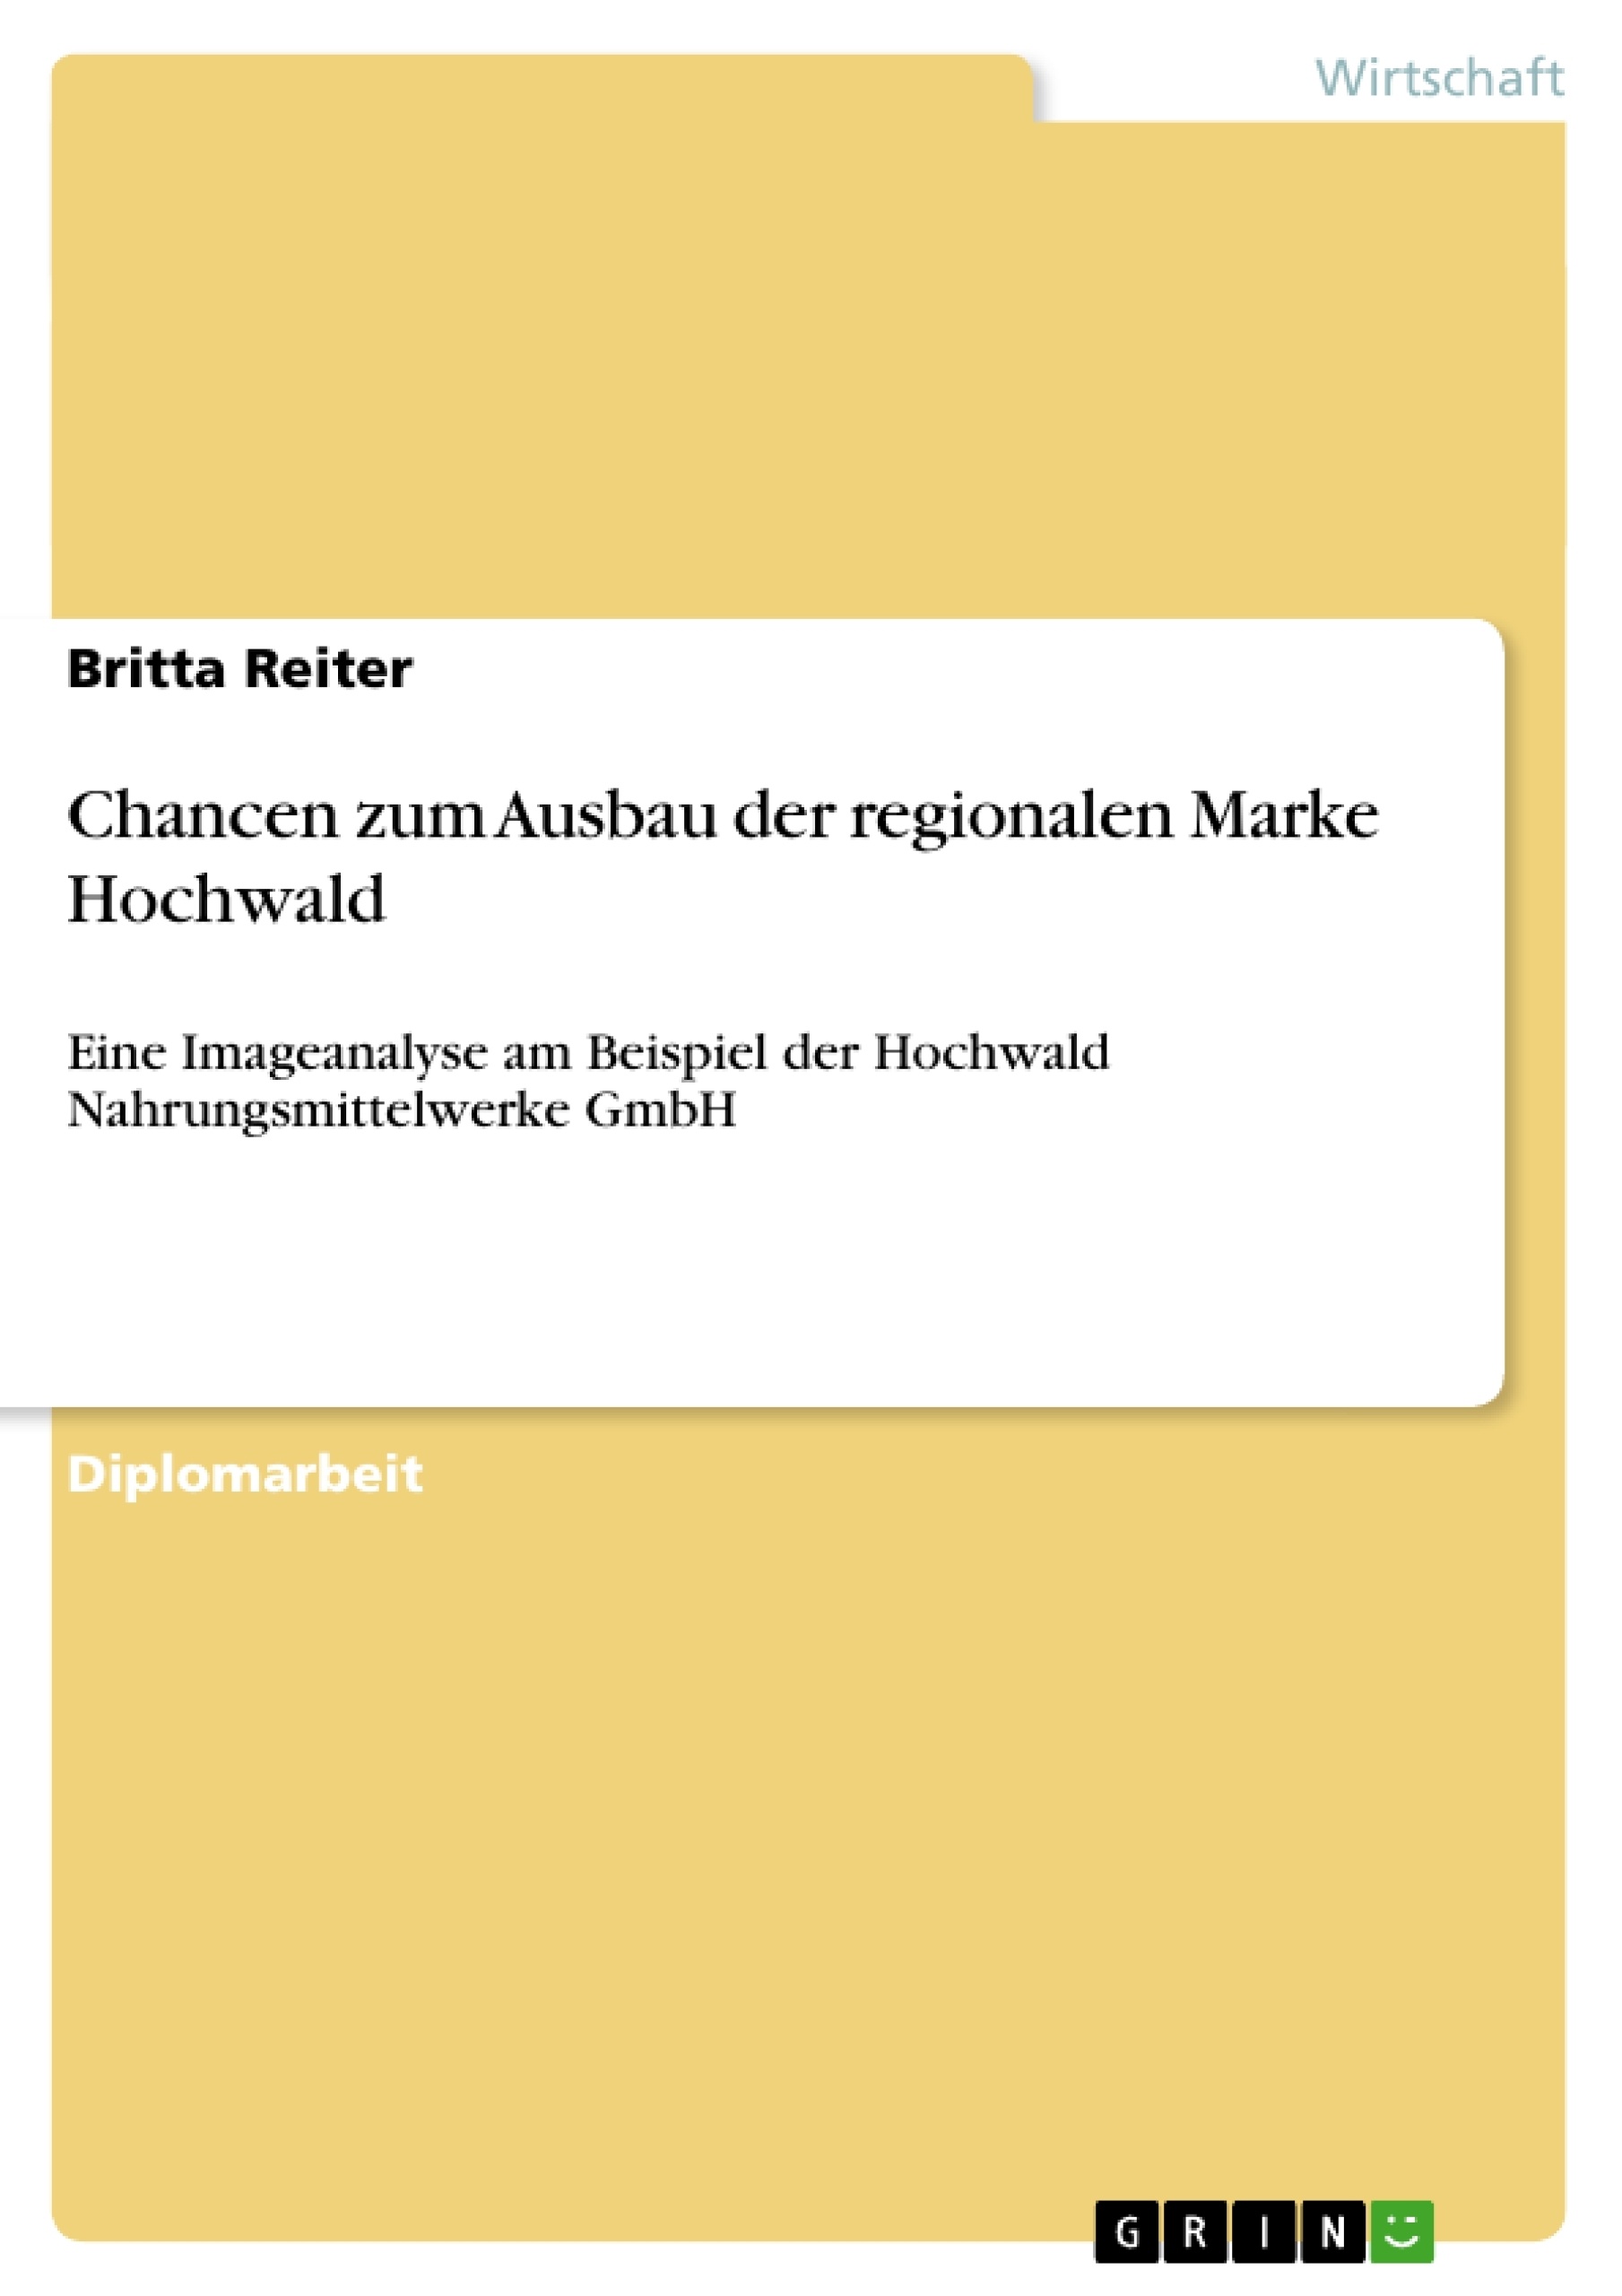 Titre: Chancen zum Ausbau der regionalen Marke Hochwald